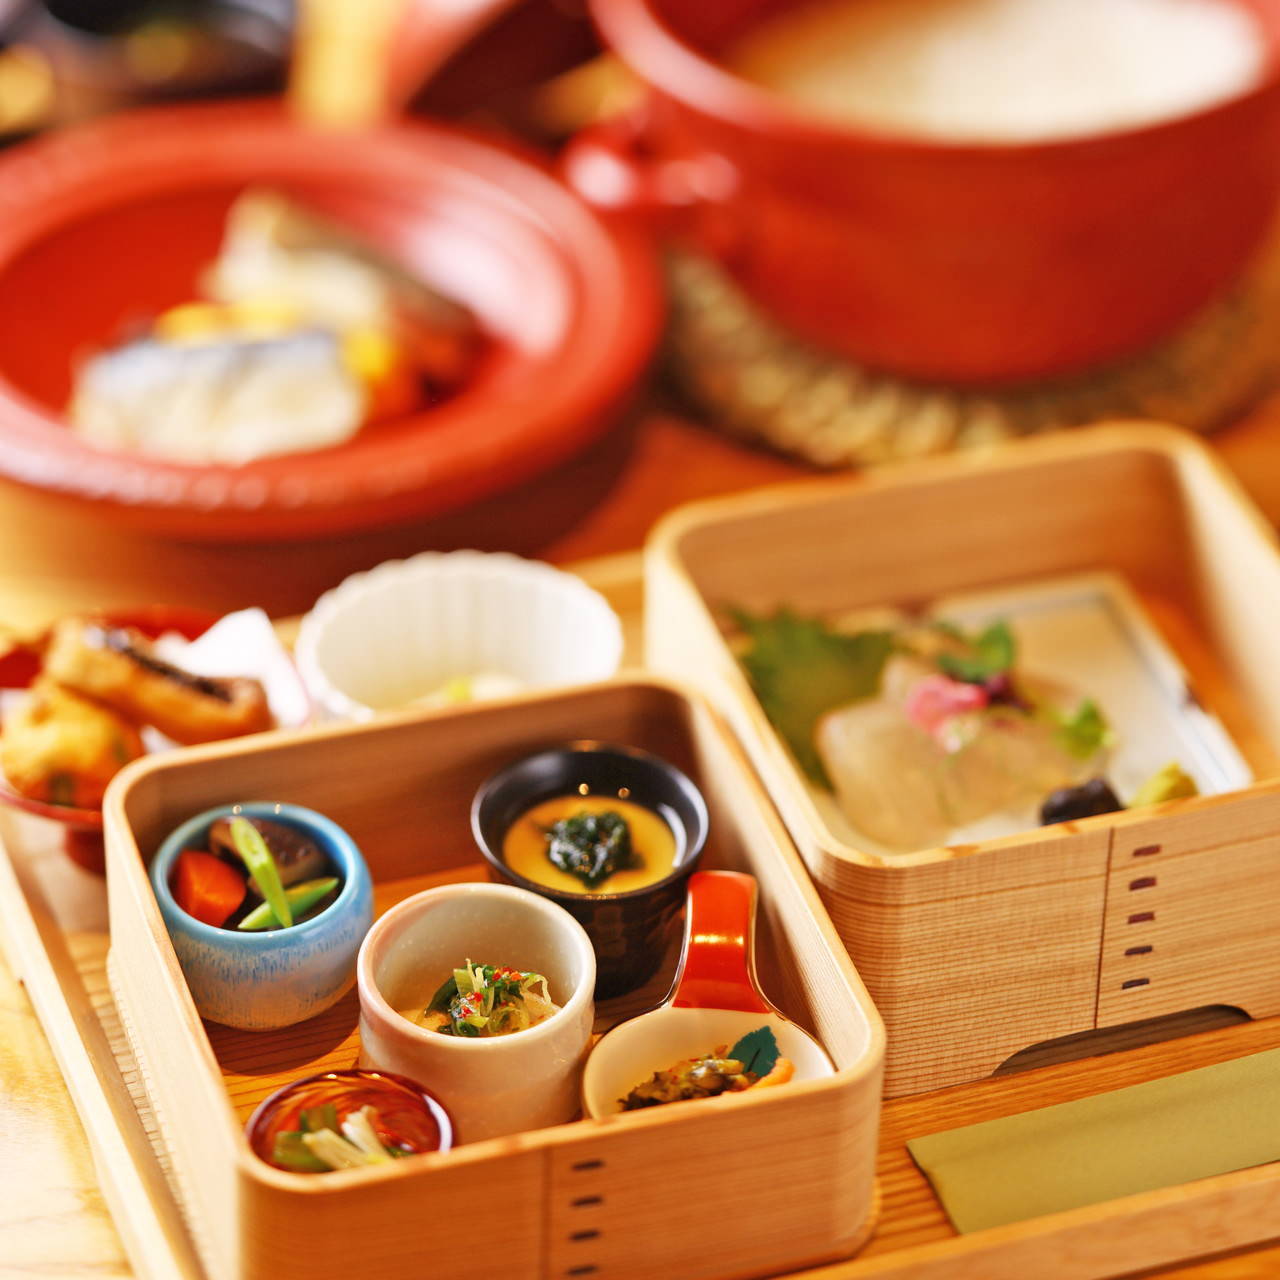 京都ならではのお料理が楽しめる彩り豊かなランチセット